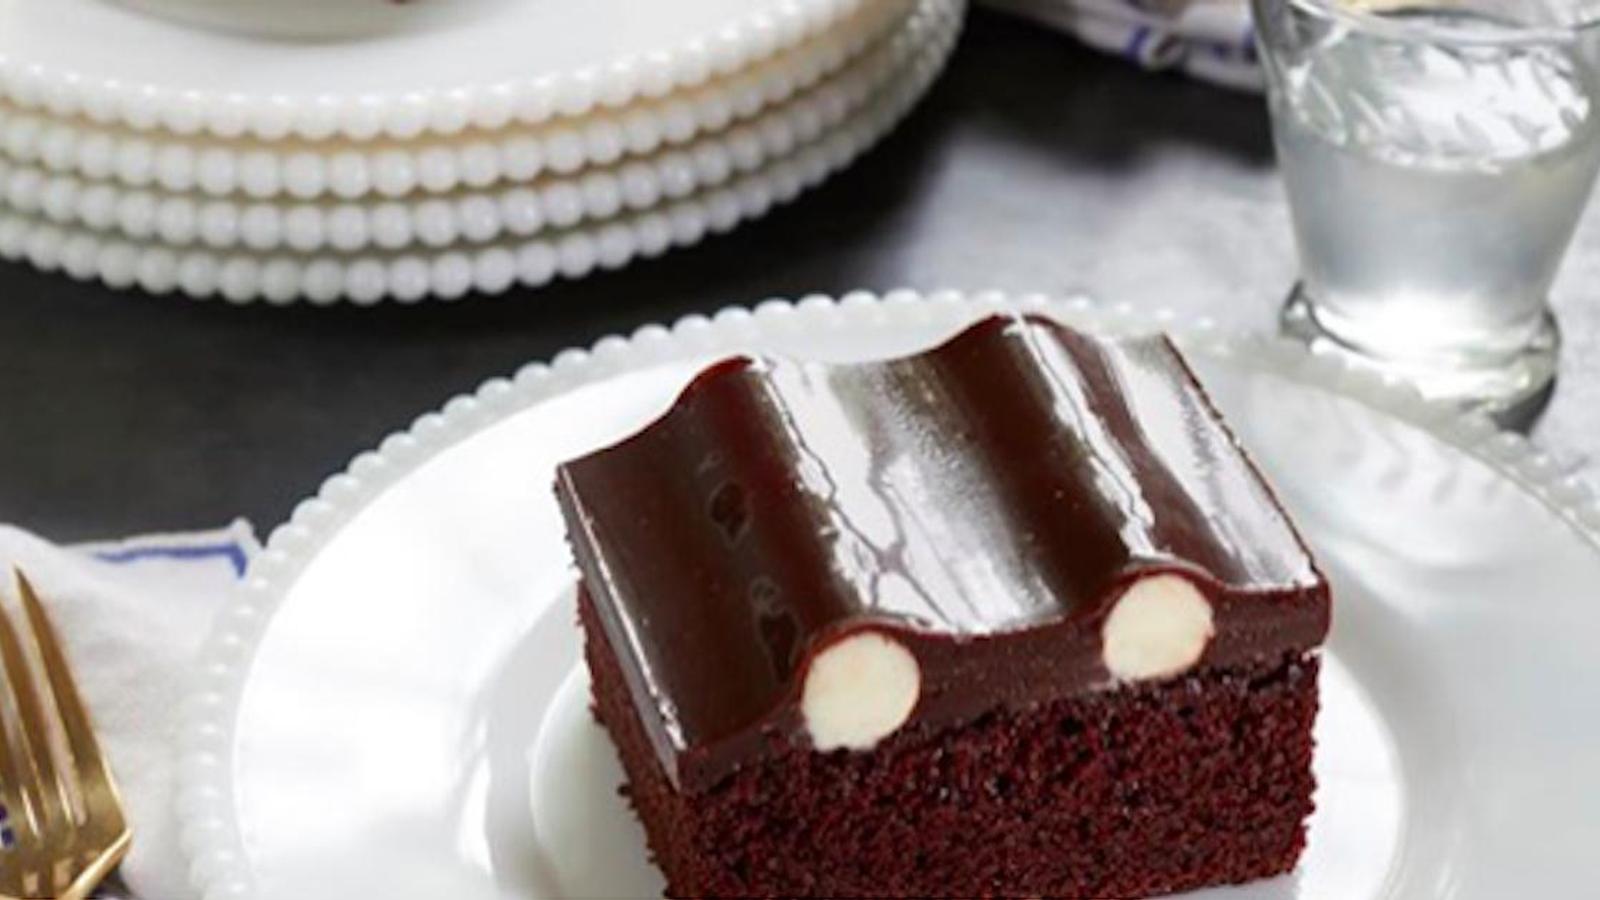 Voici l’histoire derrière le « Bumpy Cake », la recette centenaire qui enflamme Internet!